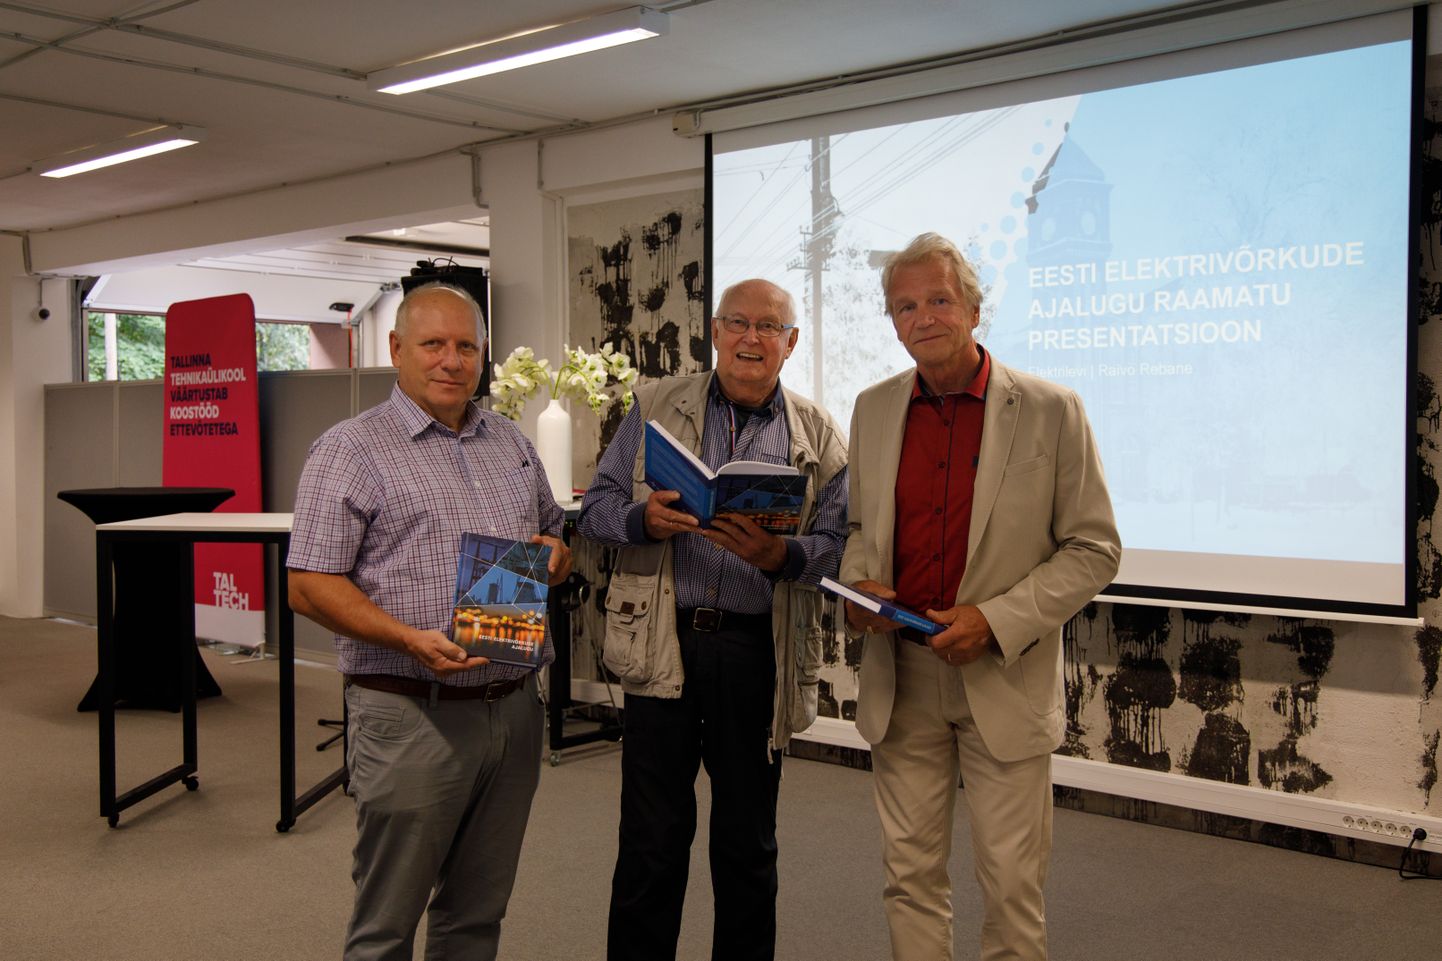 Raamatu põhiautorid (vasakult) Raivo Rebane, Tiit Metusala, Jako Kotkas.